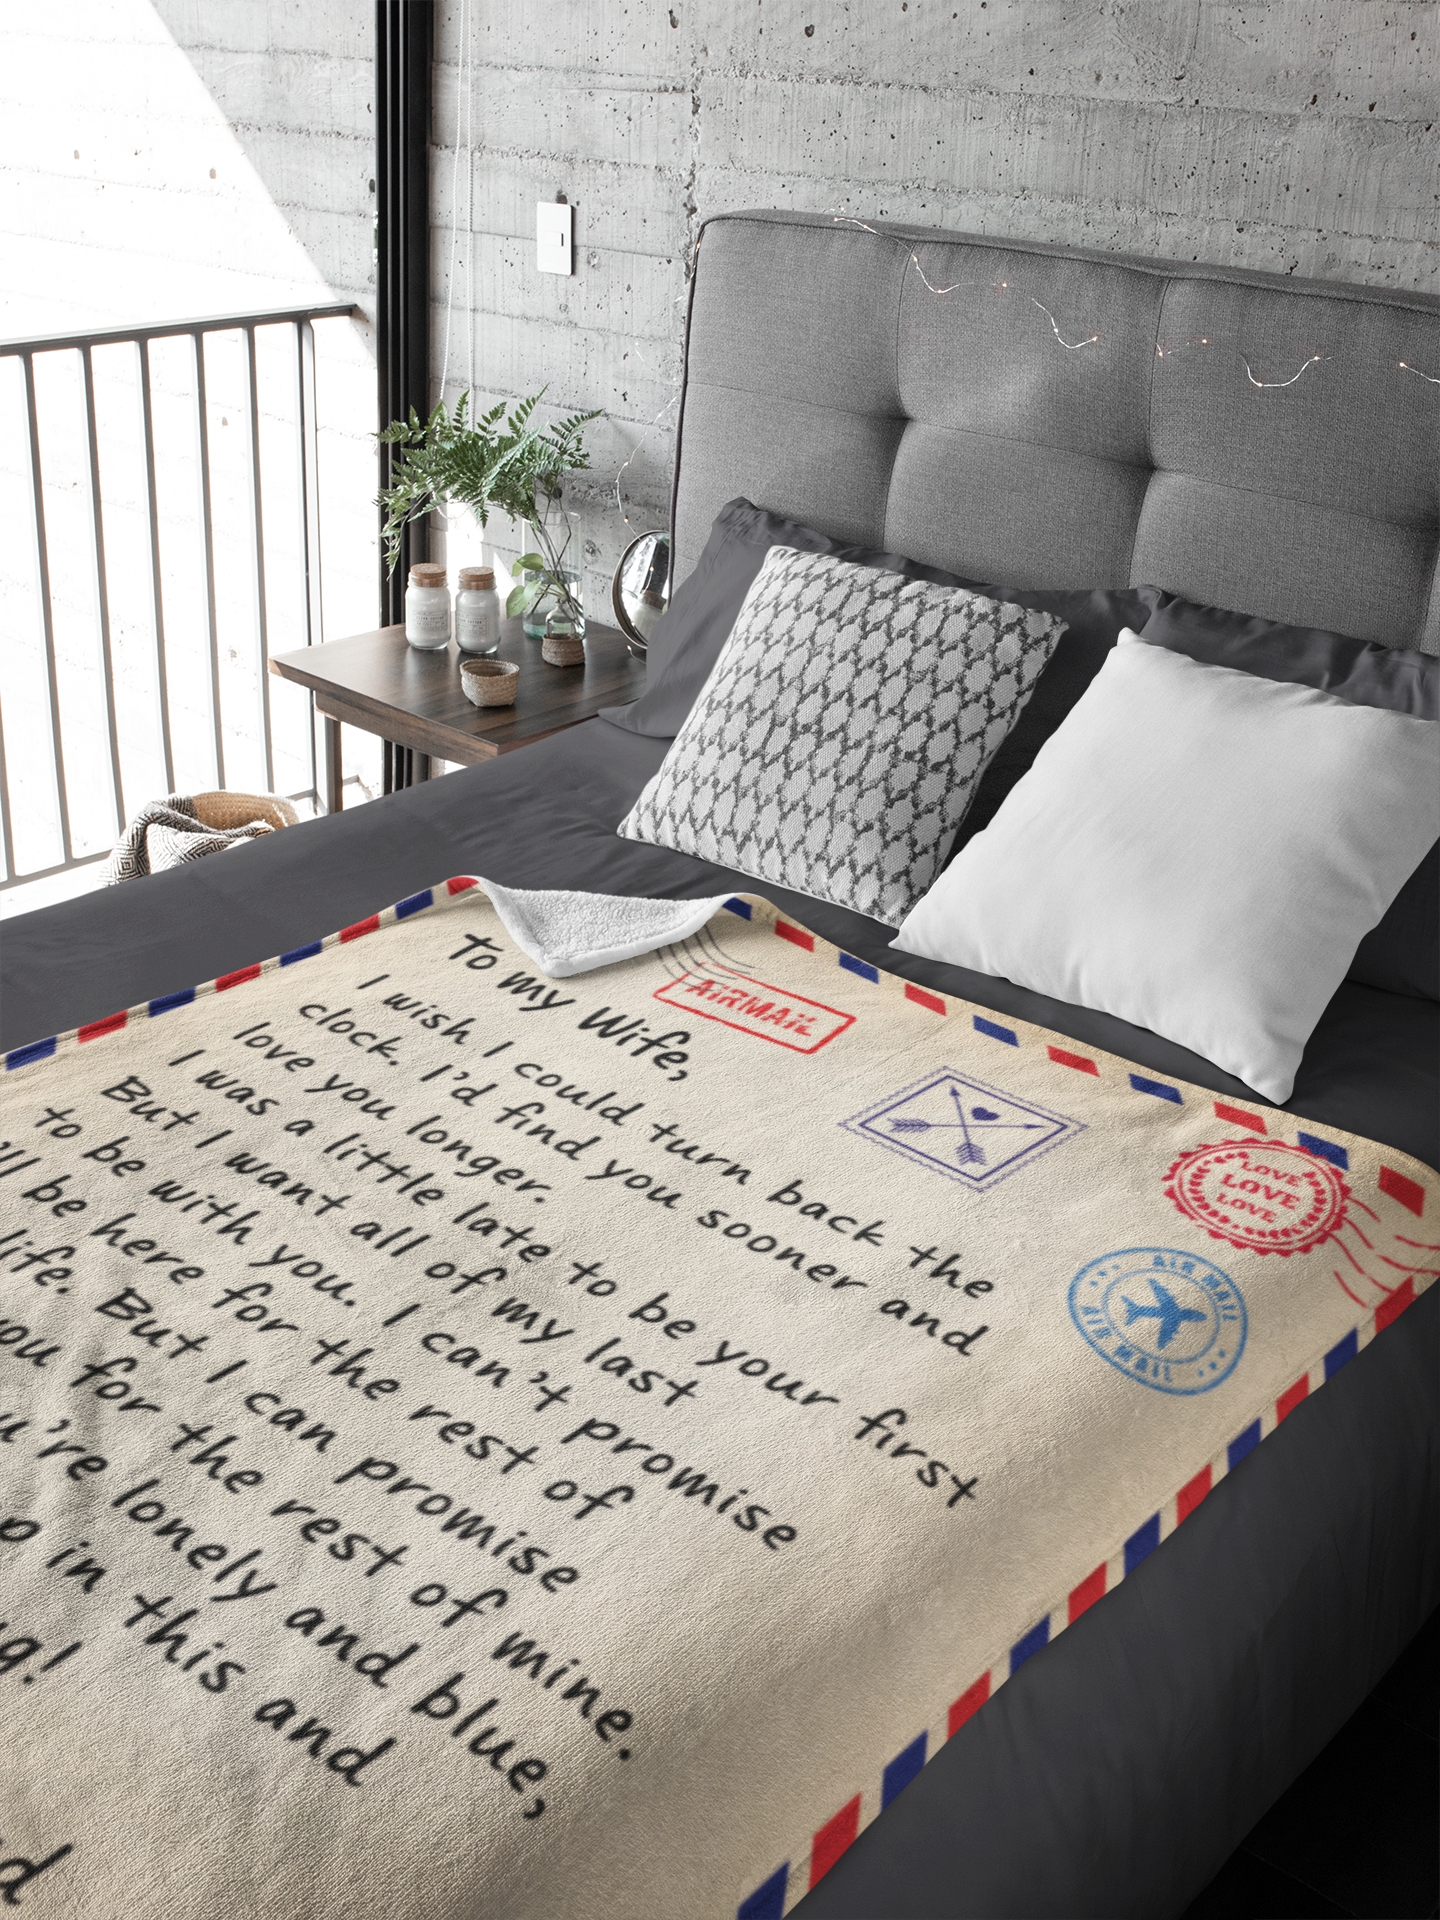 Wife - Giant Love Letter Blanket